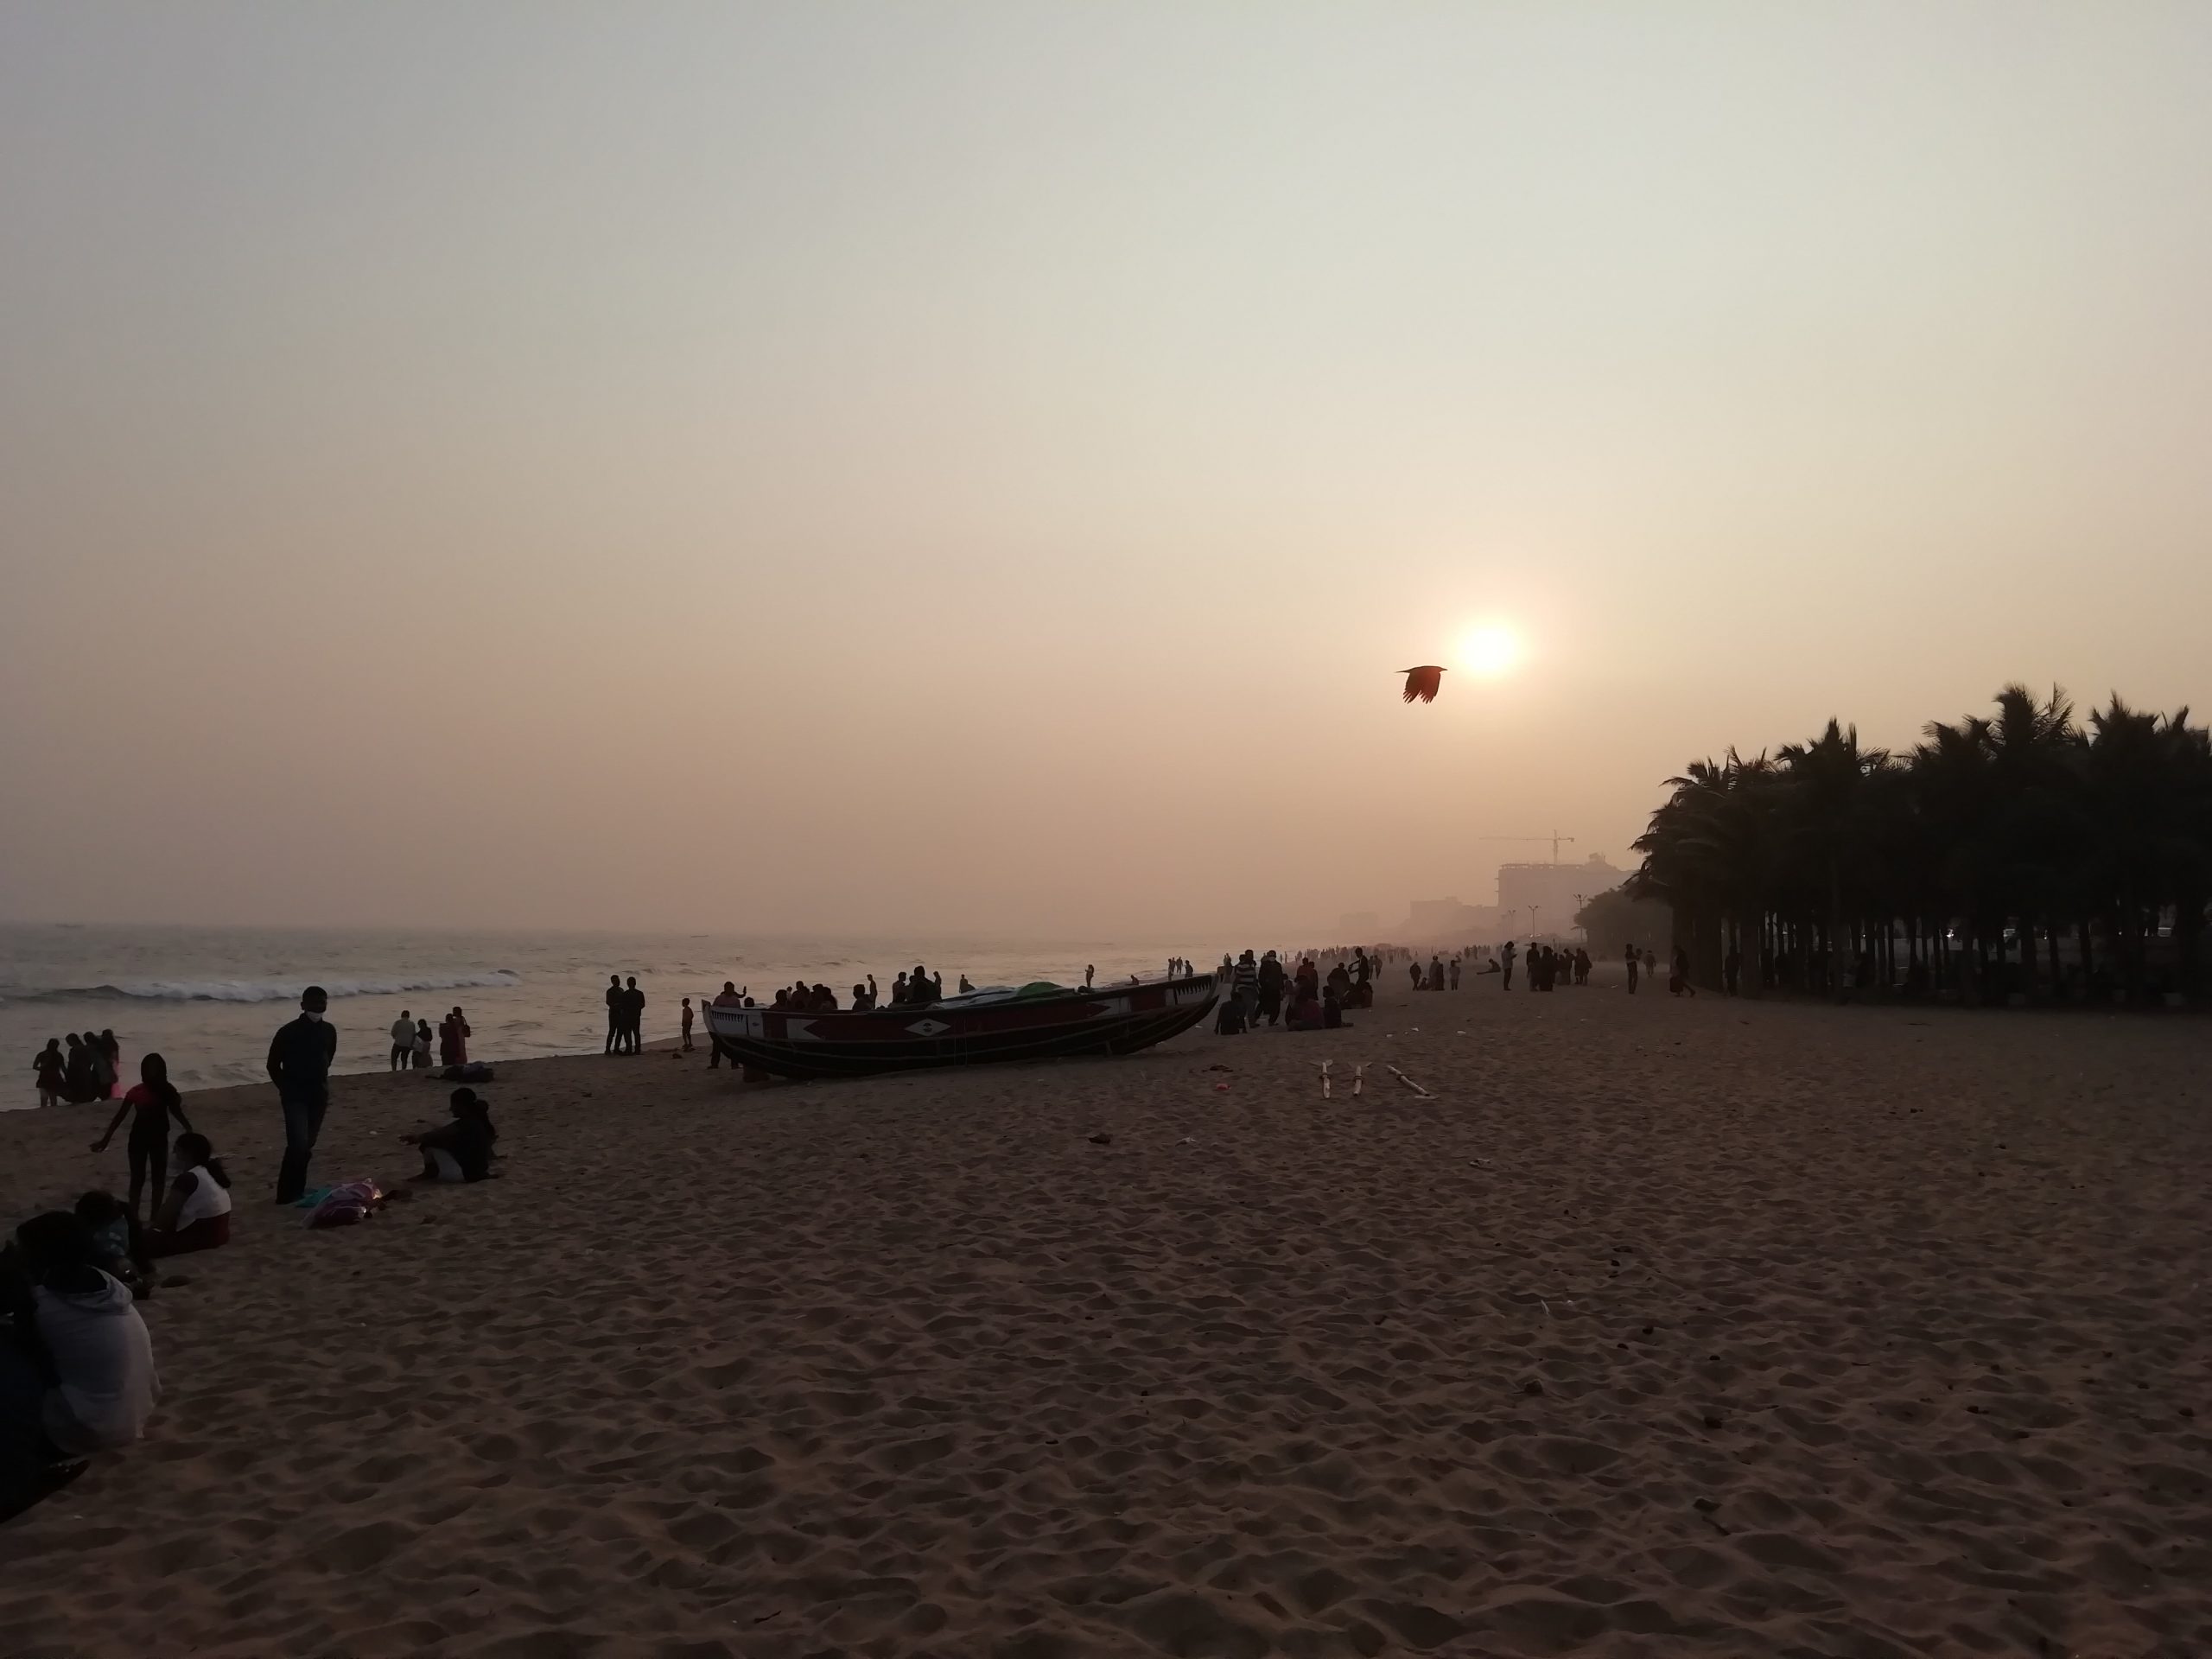 People enjoying sunset at beach